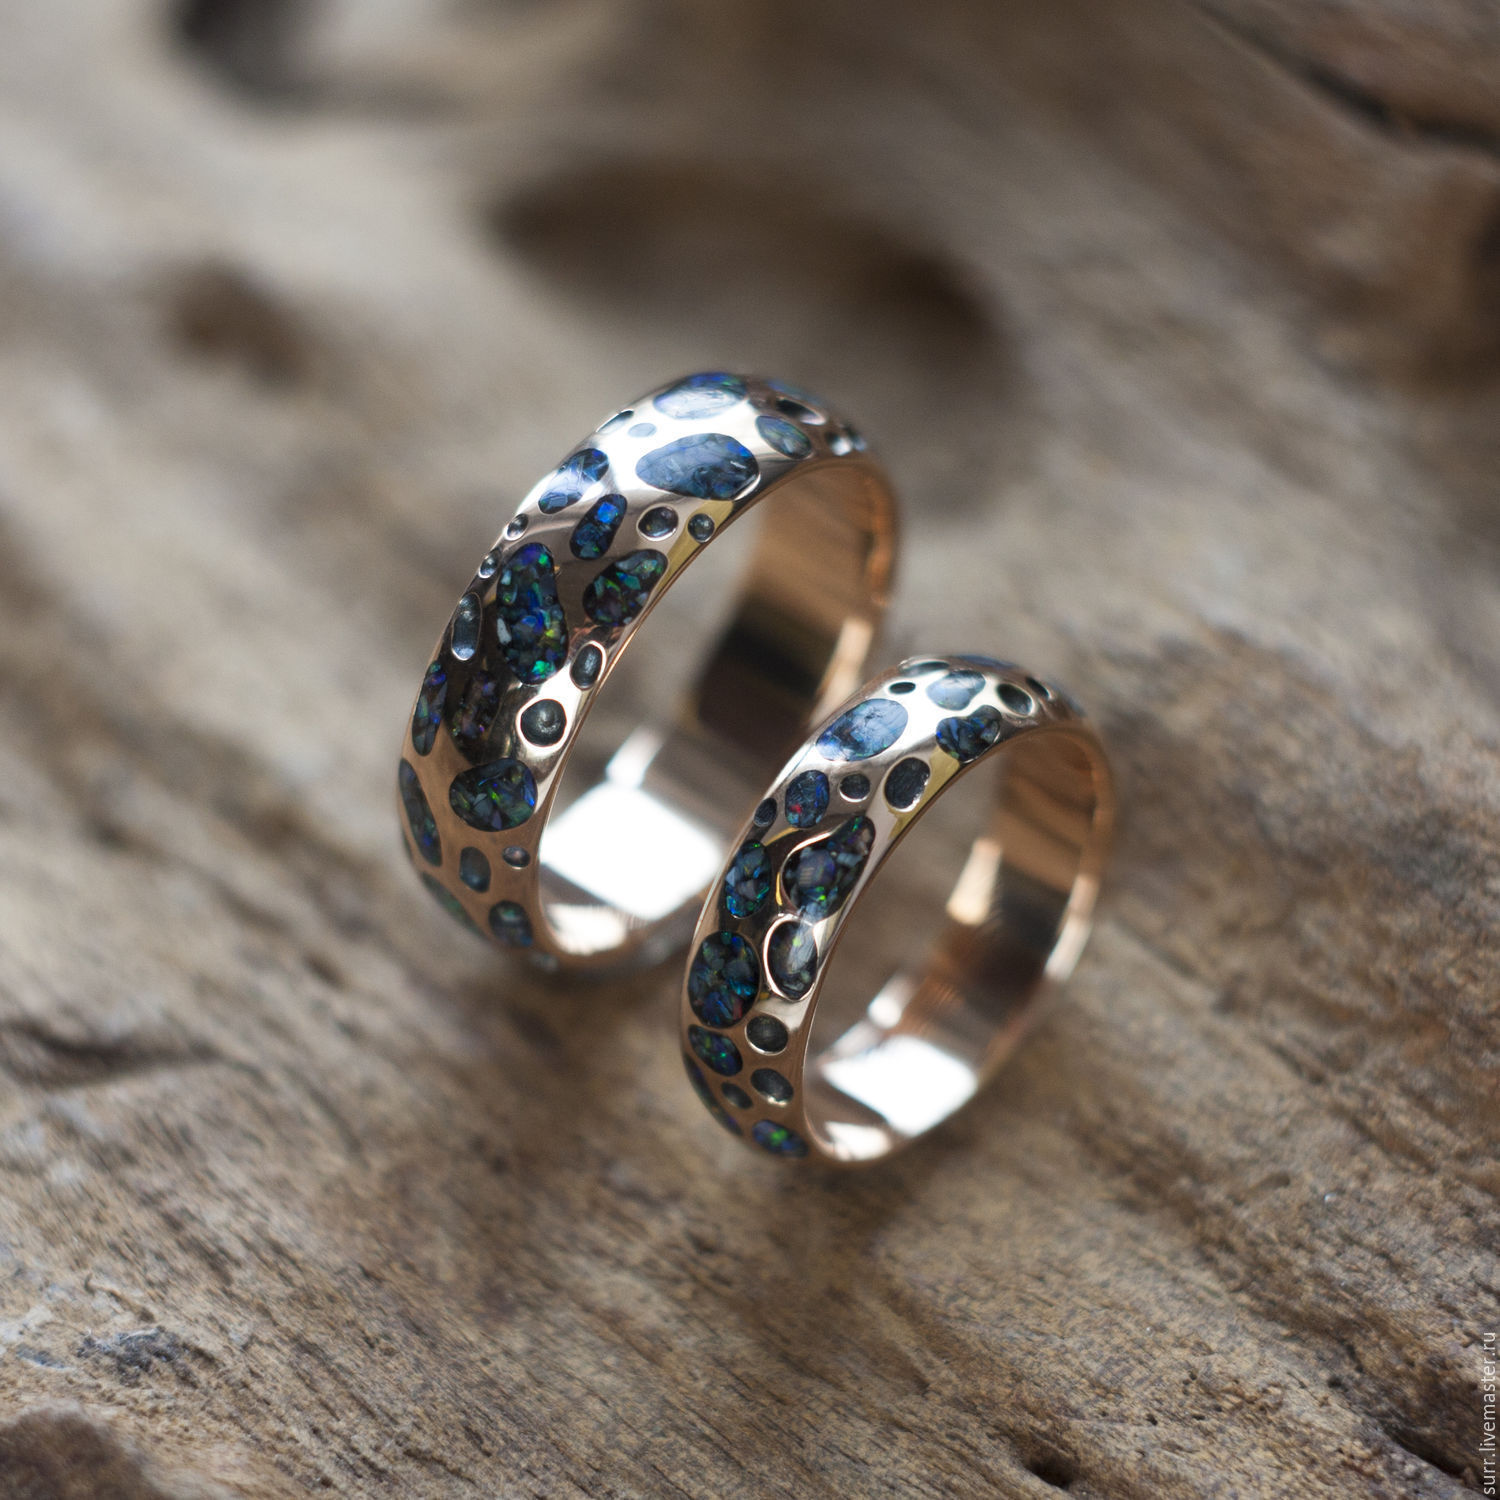 Кольца stone. Обручальное кольцо. Обручальные кольца с камнями. Необычные обручальные кольца. Кольца обручальные с камнями необычные.